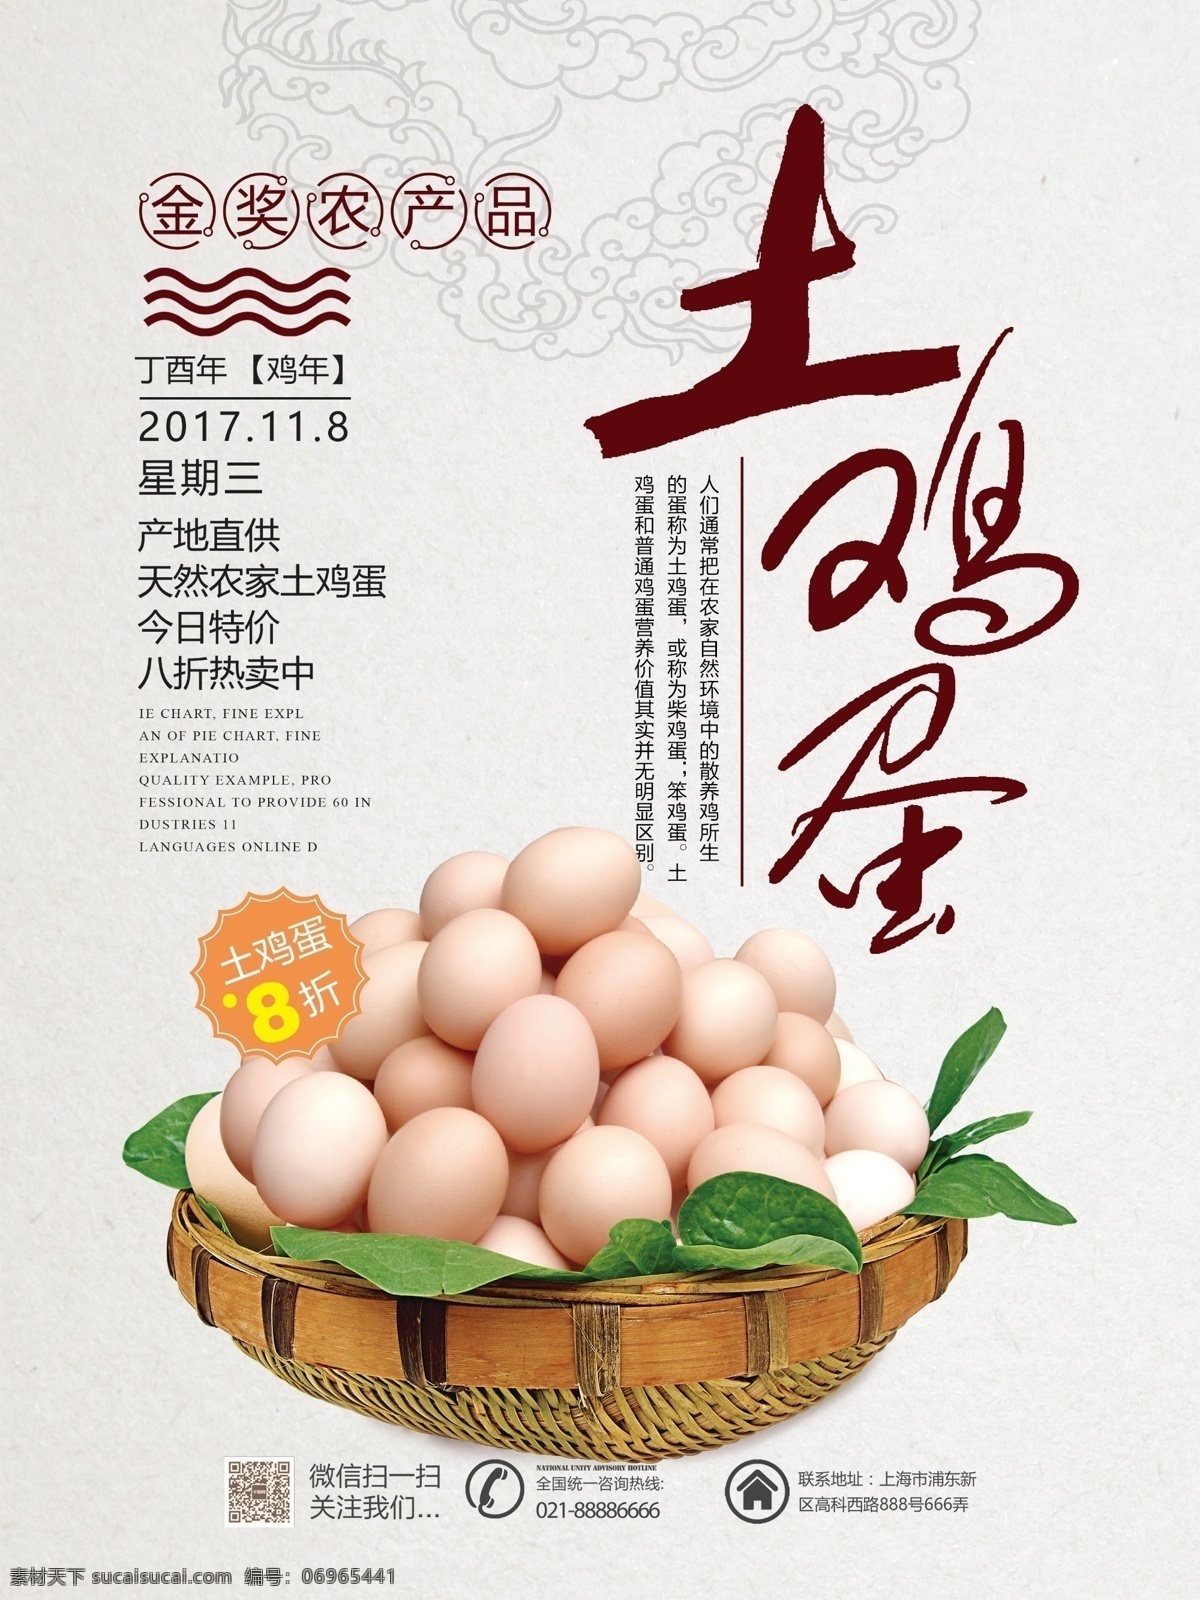 简约 中国 风 农家 土 鸡蛋 宣传 促销 清新 中国风 土家鸡蛋 土鸡蛋 农家土鸡蛋 有机鸡蛋 农家鸡蛋 鸡蛋促销 天然鸡蛋 土鸡蛋海报 海报